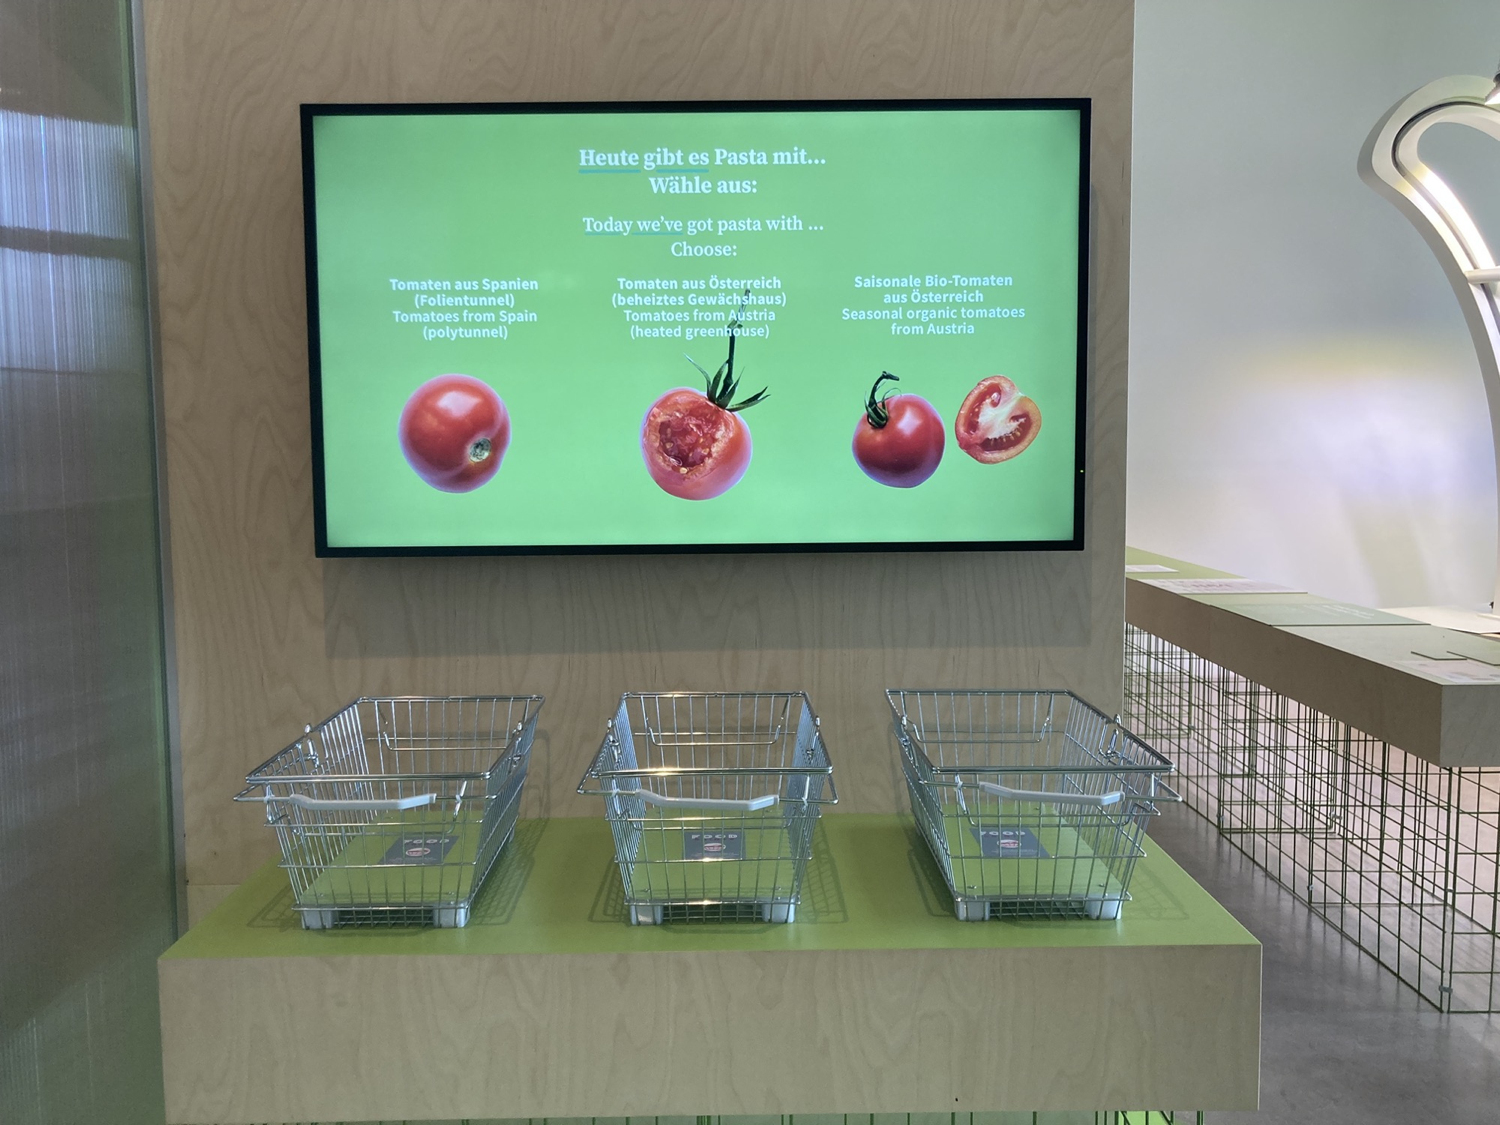 ein Bildschirm, auf dem drei Sorten von Paradeisern/Tomaten abgebildet sind, darunter drei Einkaufskörbe, in denen Besucher:innen ihre Karten ablegen können, um eine Einkaufsentscheidung zu treffen